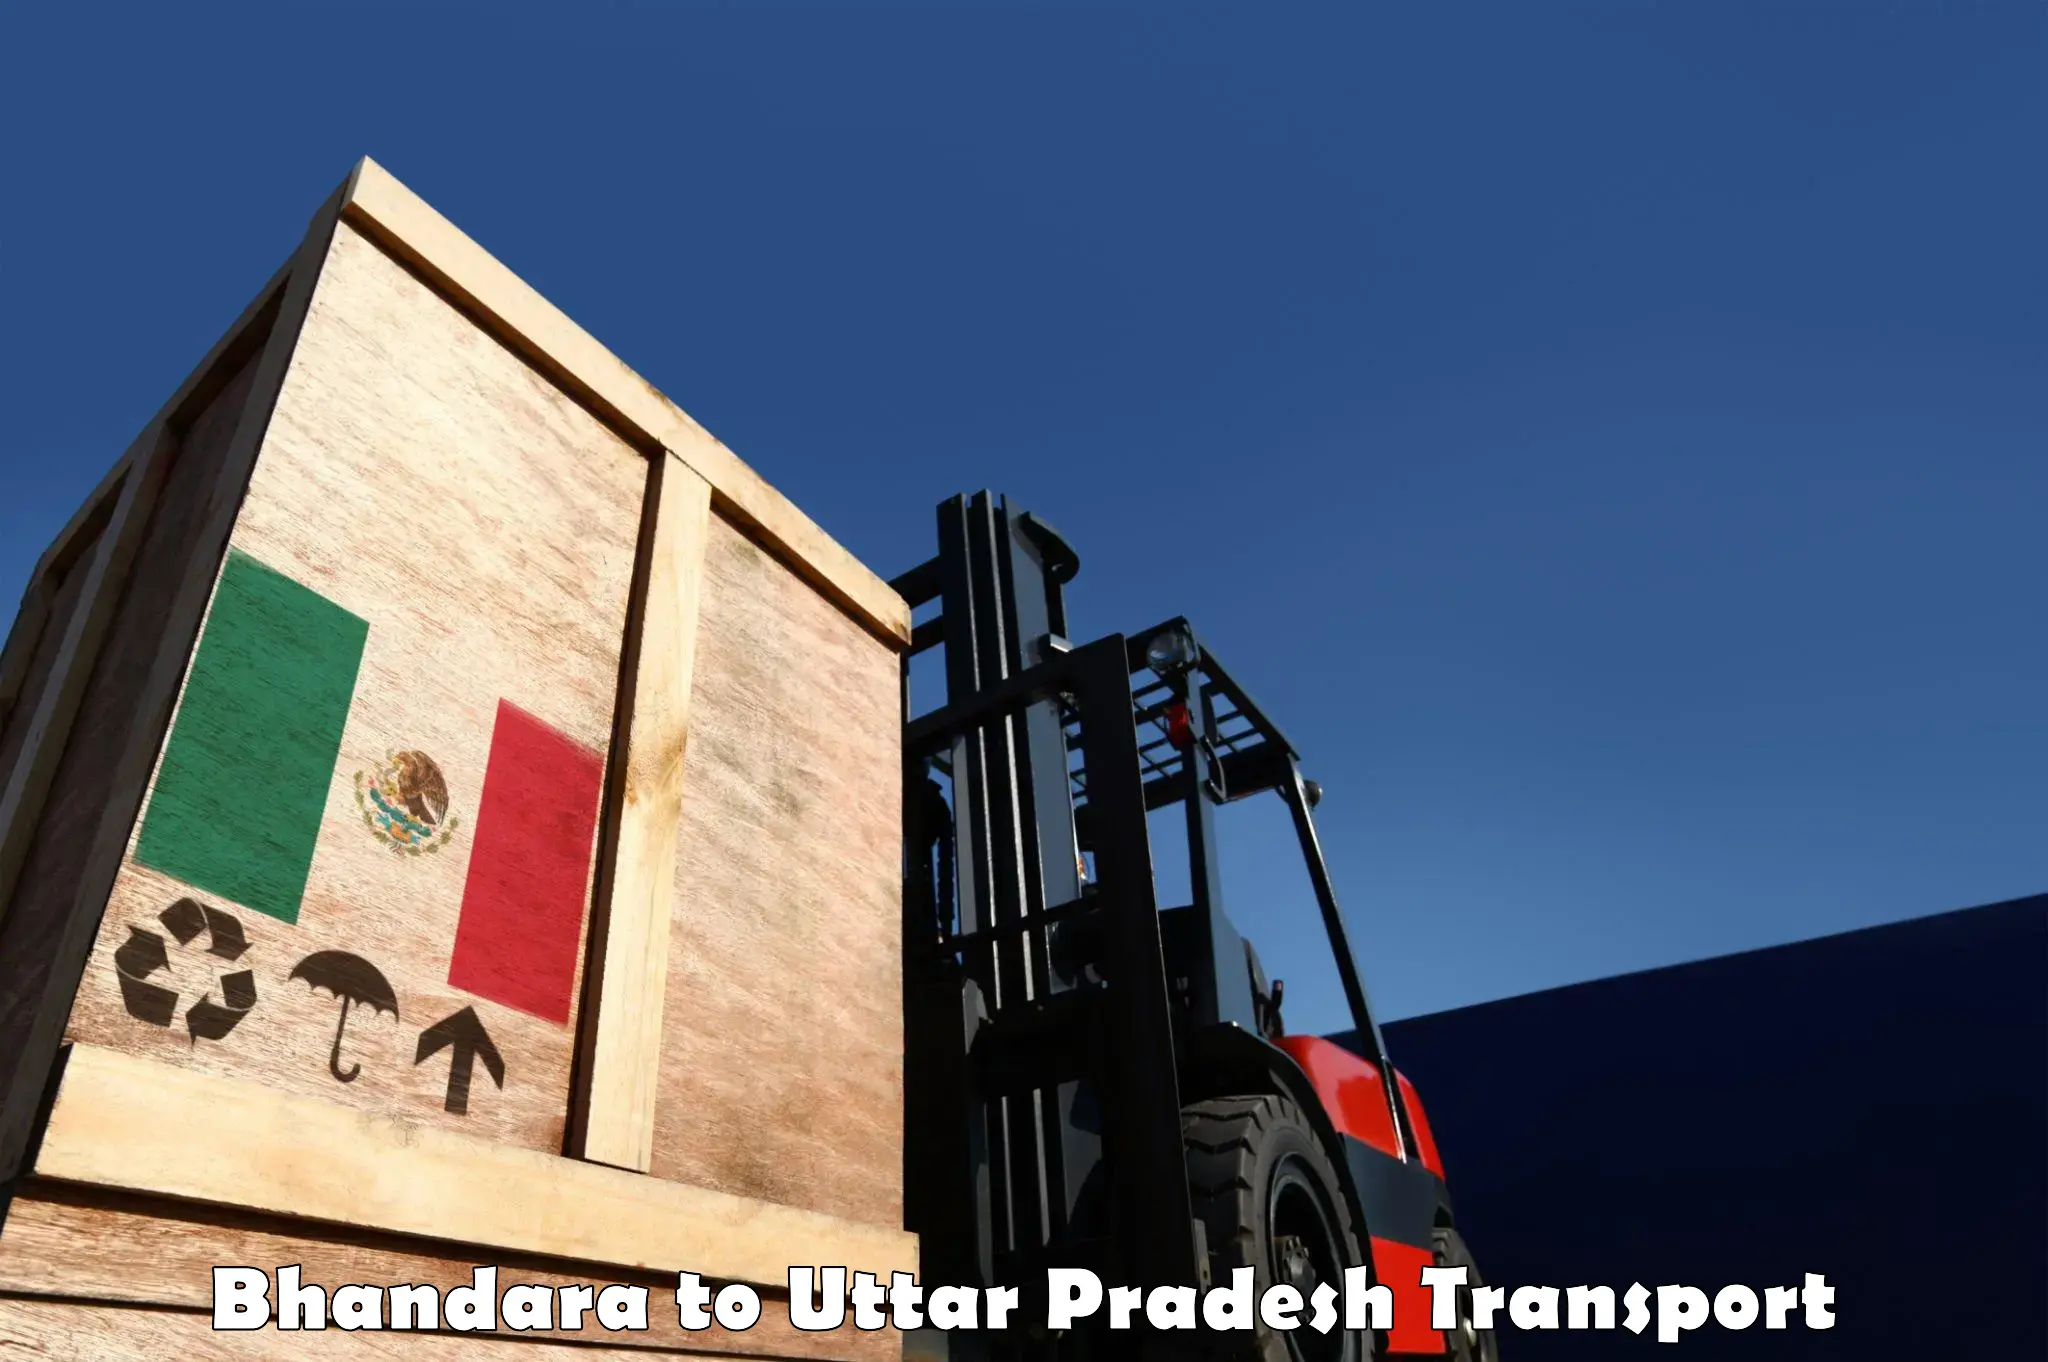 Nearest transport service Bhandara to Khair